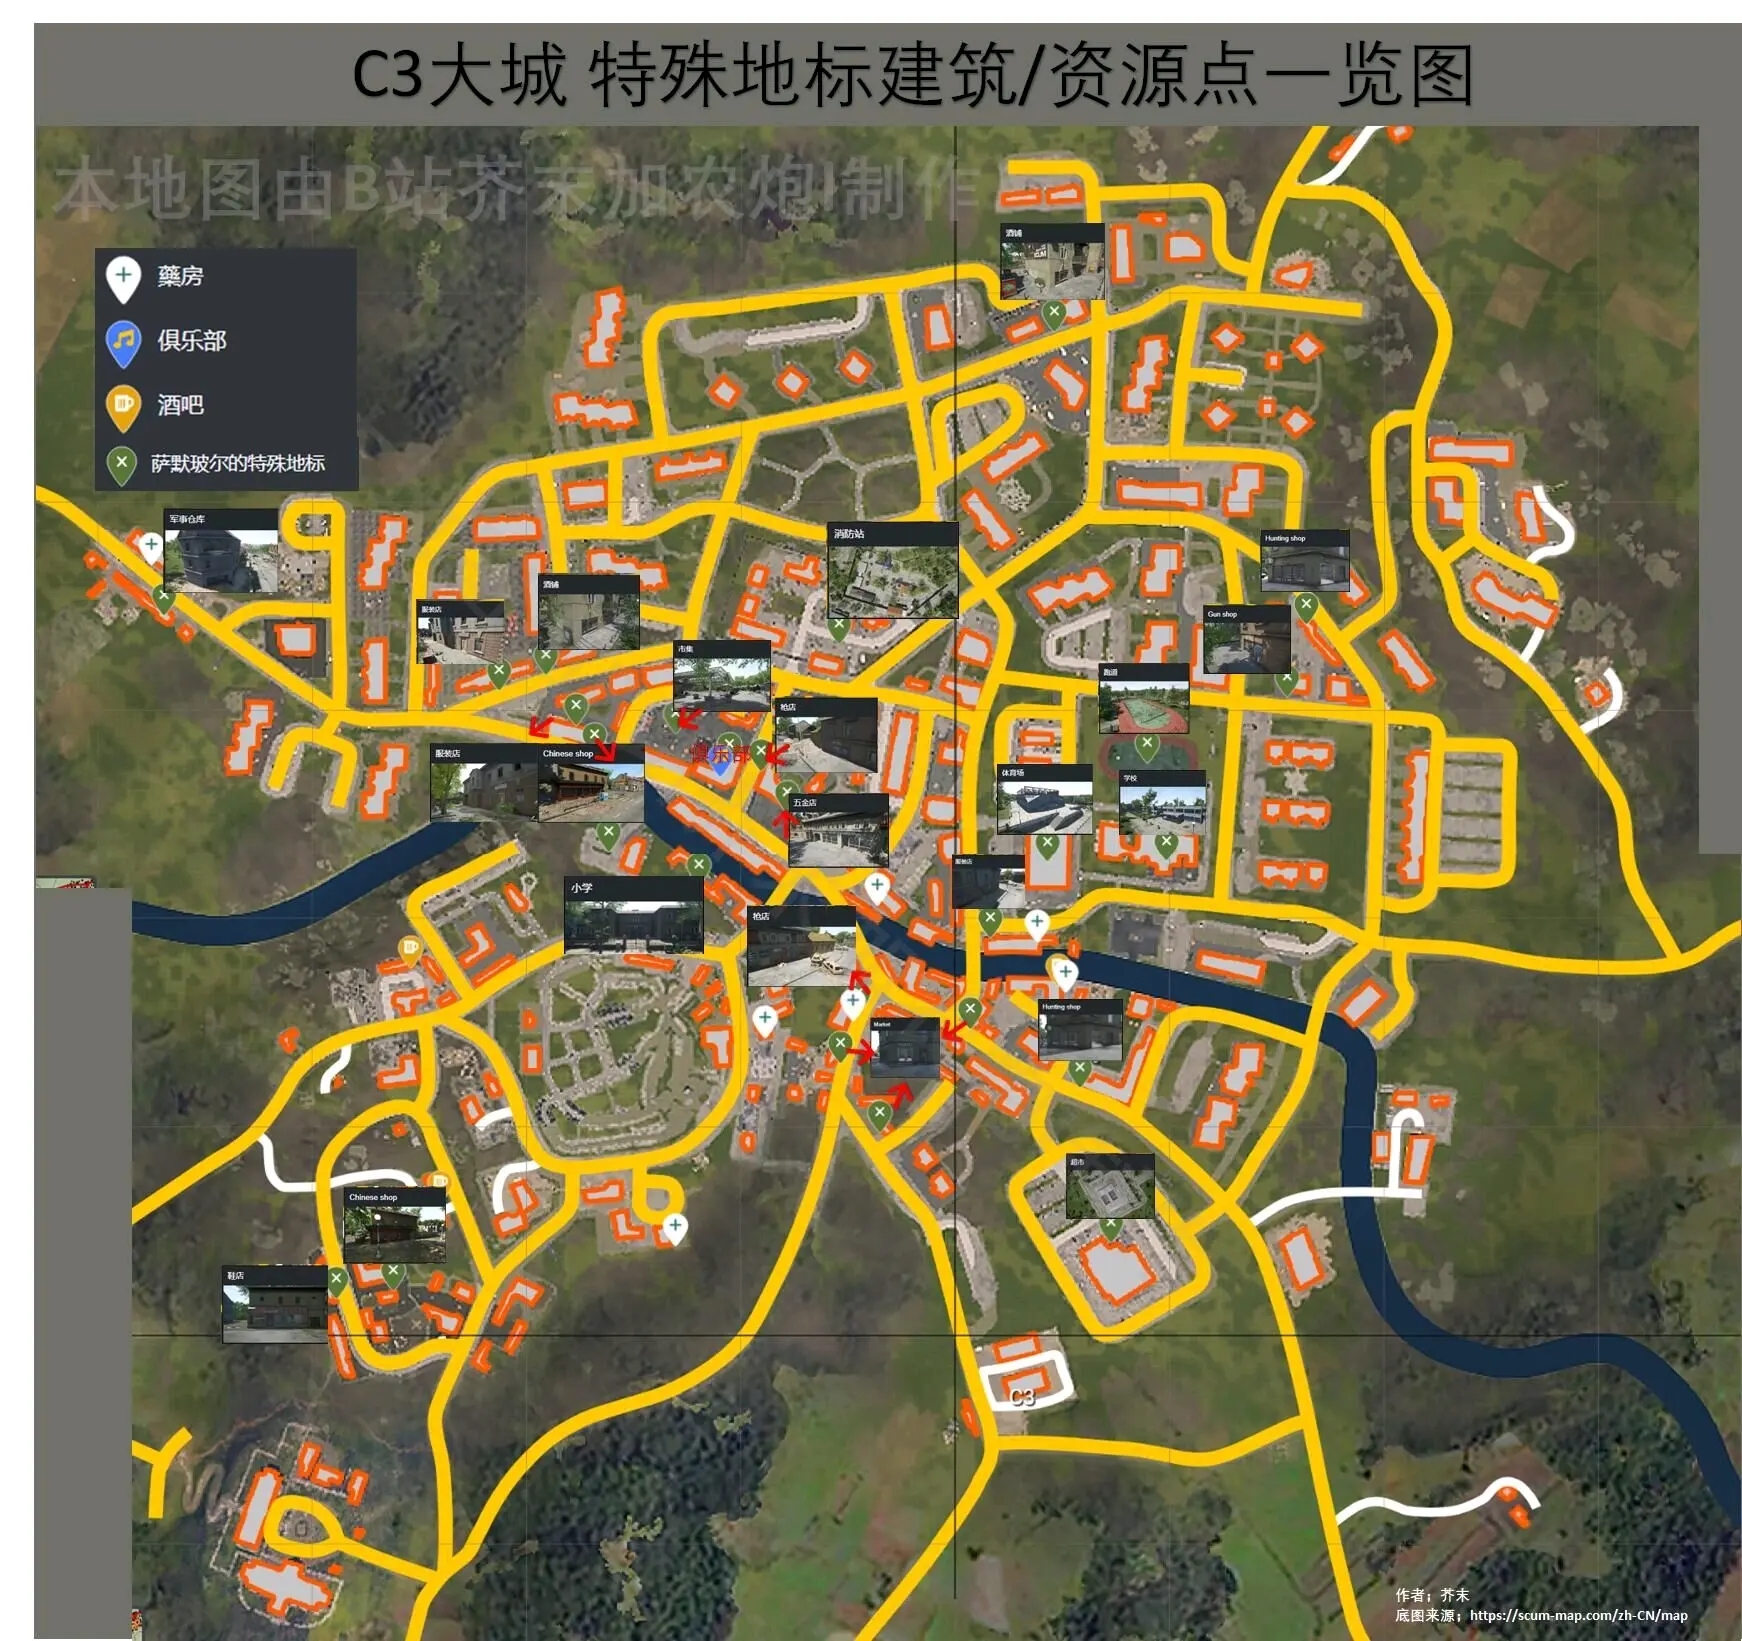 SCUM 0.8版本C3大城物资点分布位置图